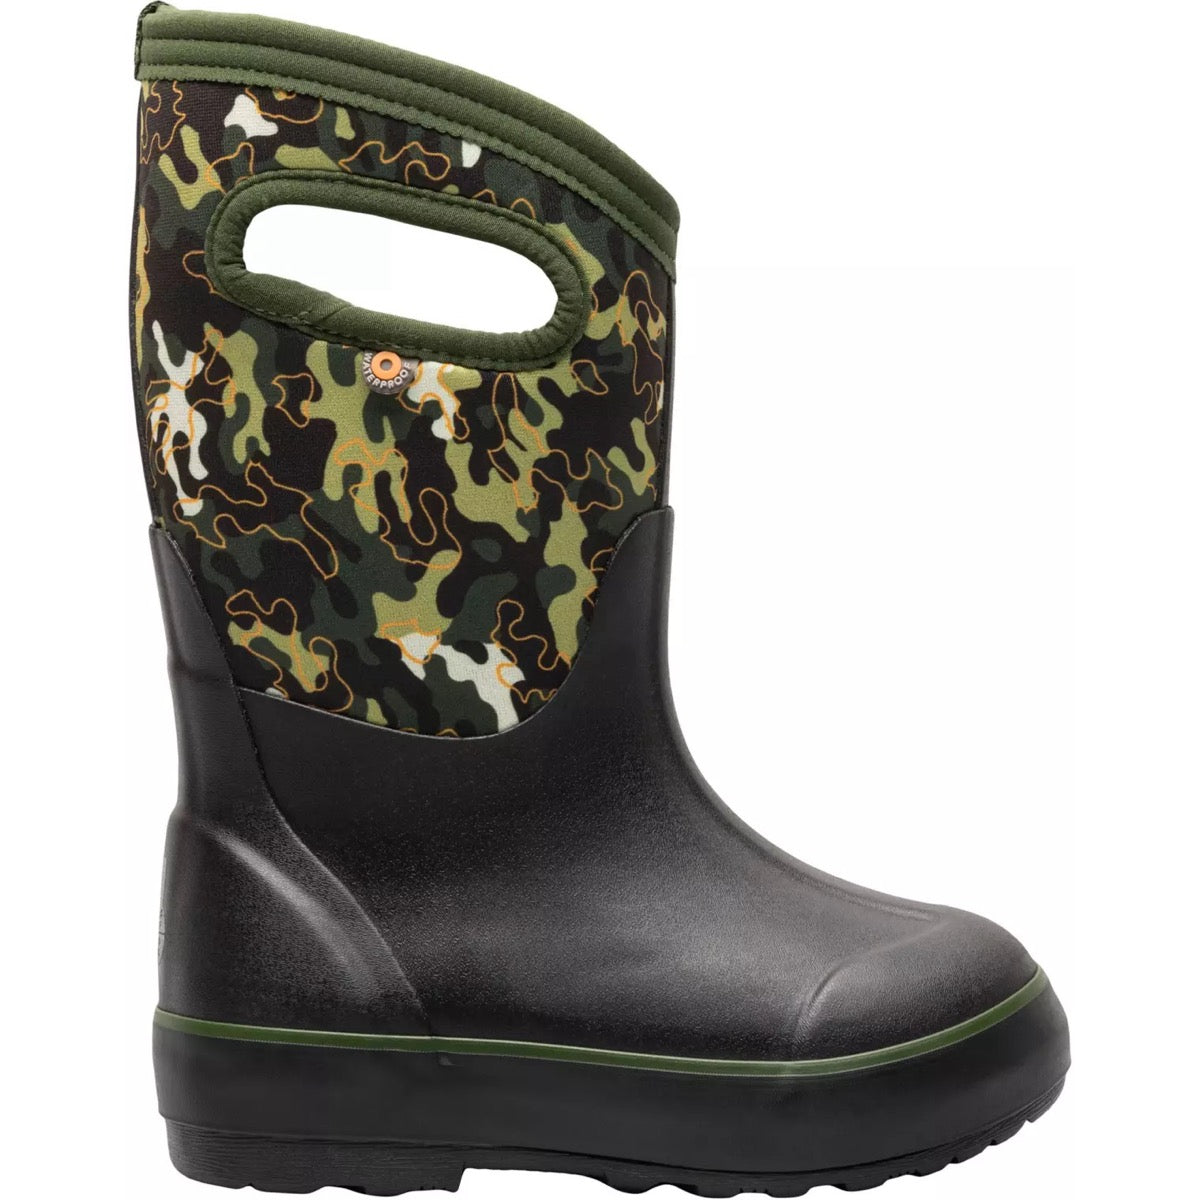 Bogs, Classic II Water Garden Waterproof Boots, Kids, Army Green Multi (353)